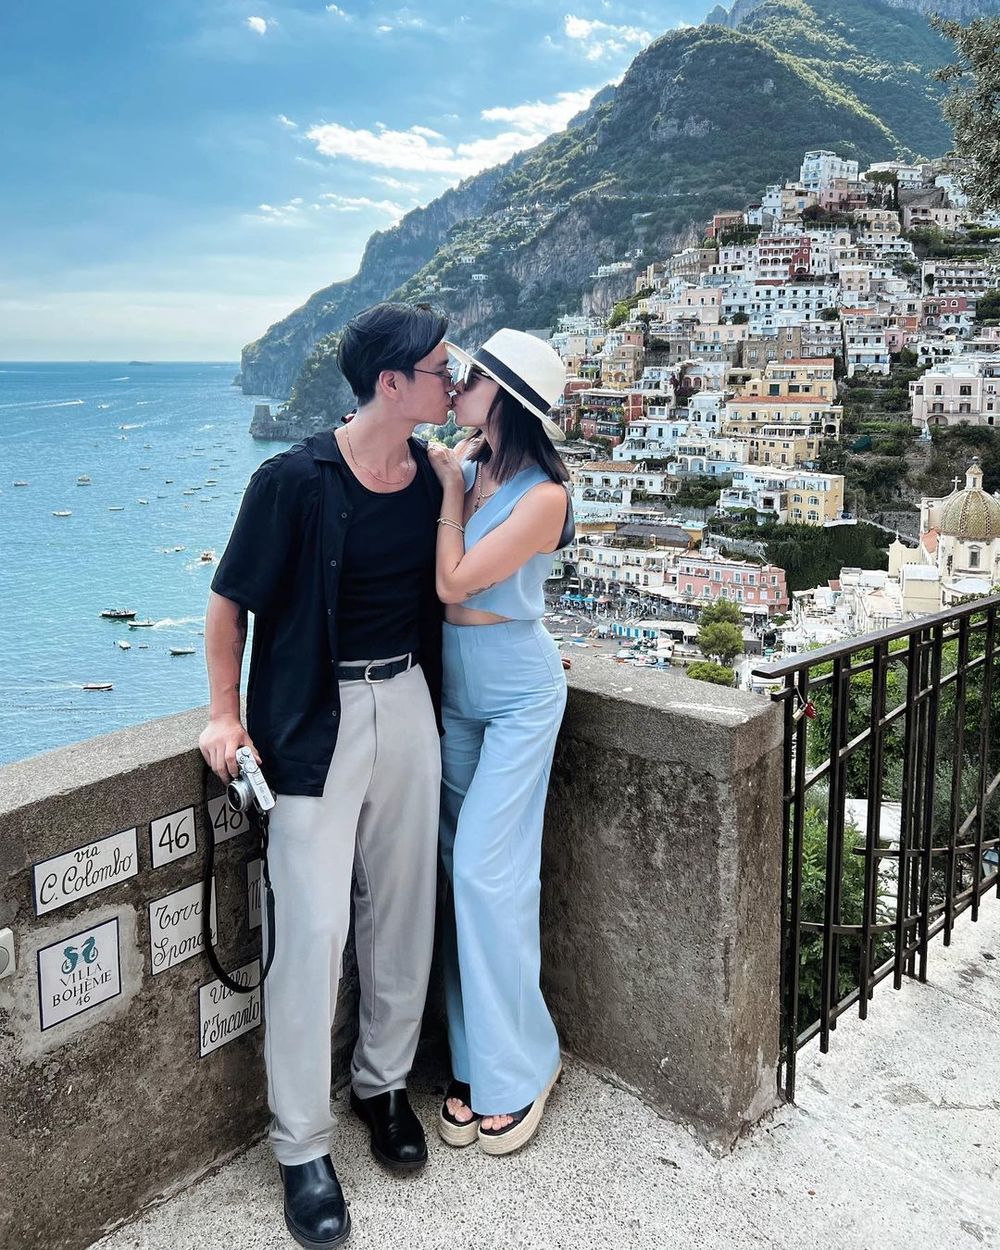  
Cả 2 trao nhau nụ hôn ngọt ngào tại một bờ biển nổi tiếng ở Ý. (Ảnh: Instagram @ngothanhvan_official​) - Tin sao Viet - Tin tuc sao Viet - Scandal sao Viet - Tin tuc cua Sao - Tin cua Sao